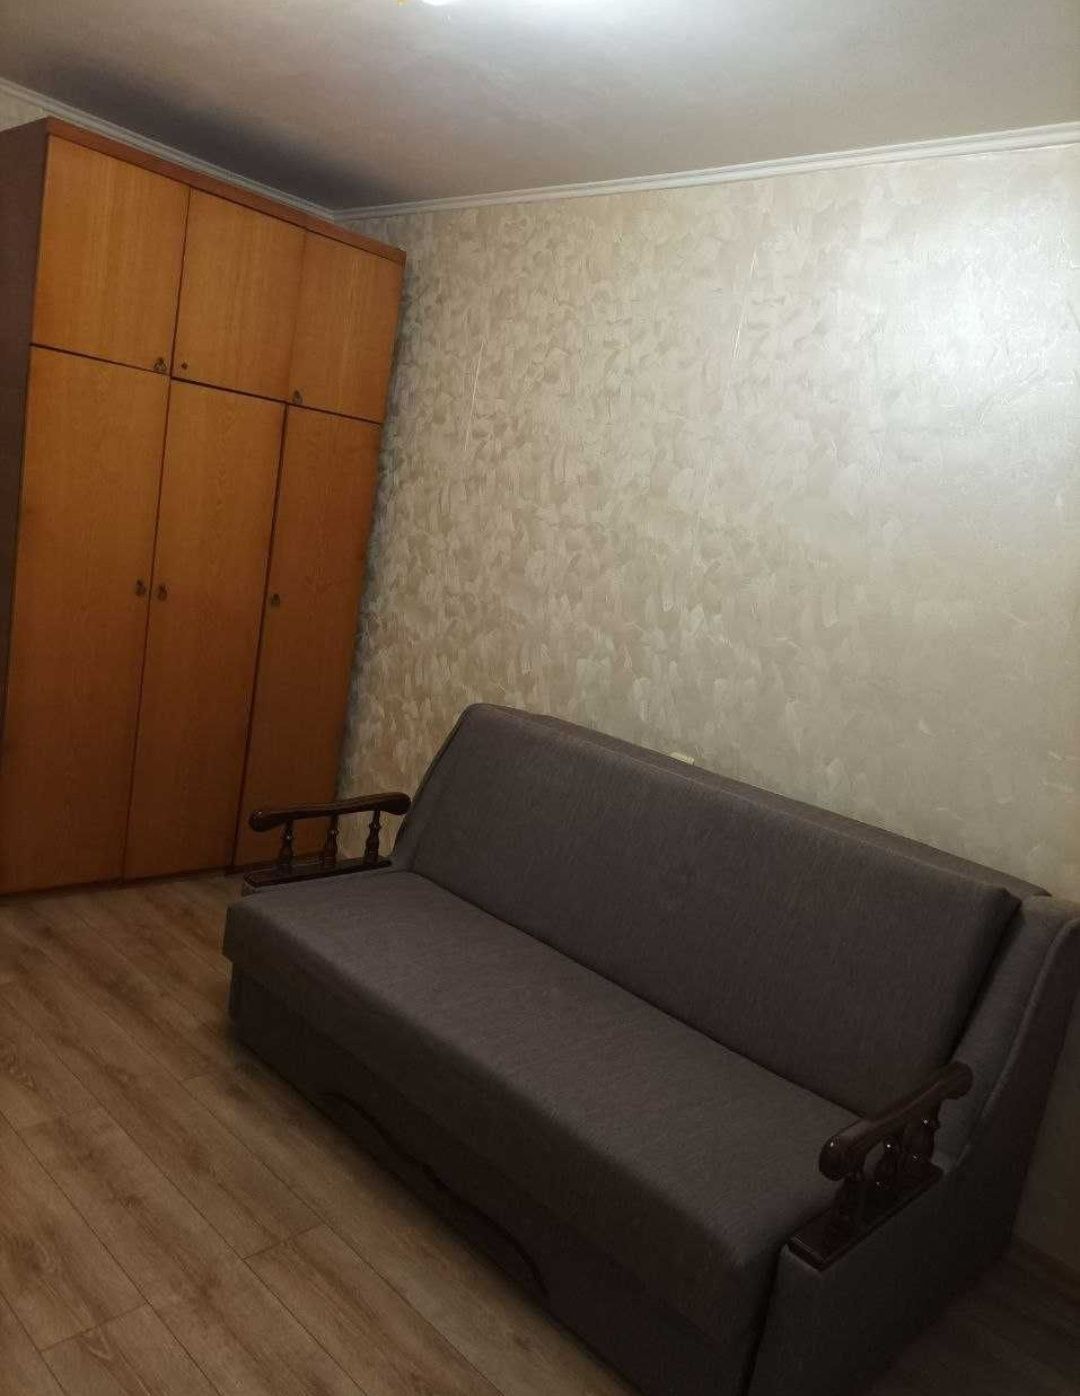 Оренда 2х кімнатної квартири у Комунарському р-ні (Водограйна 10)